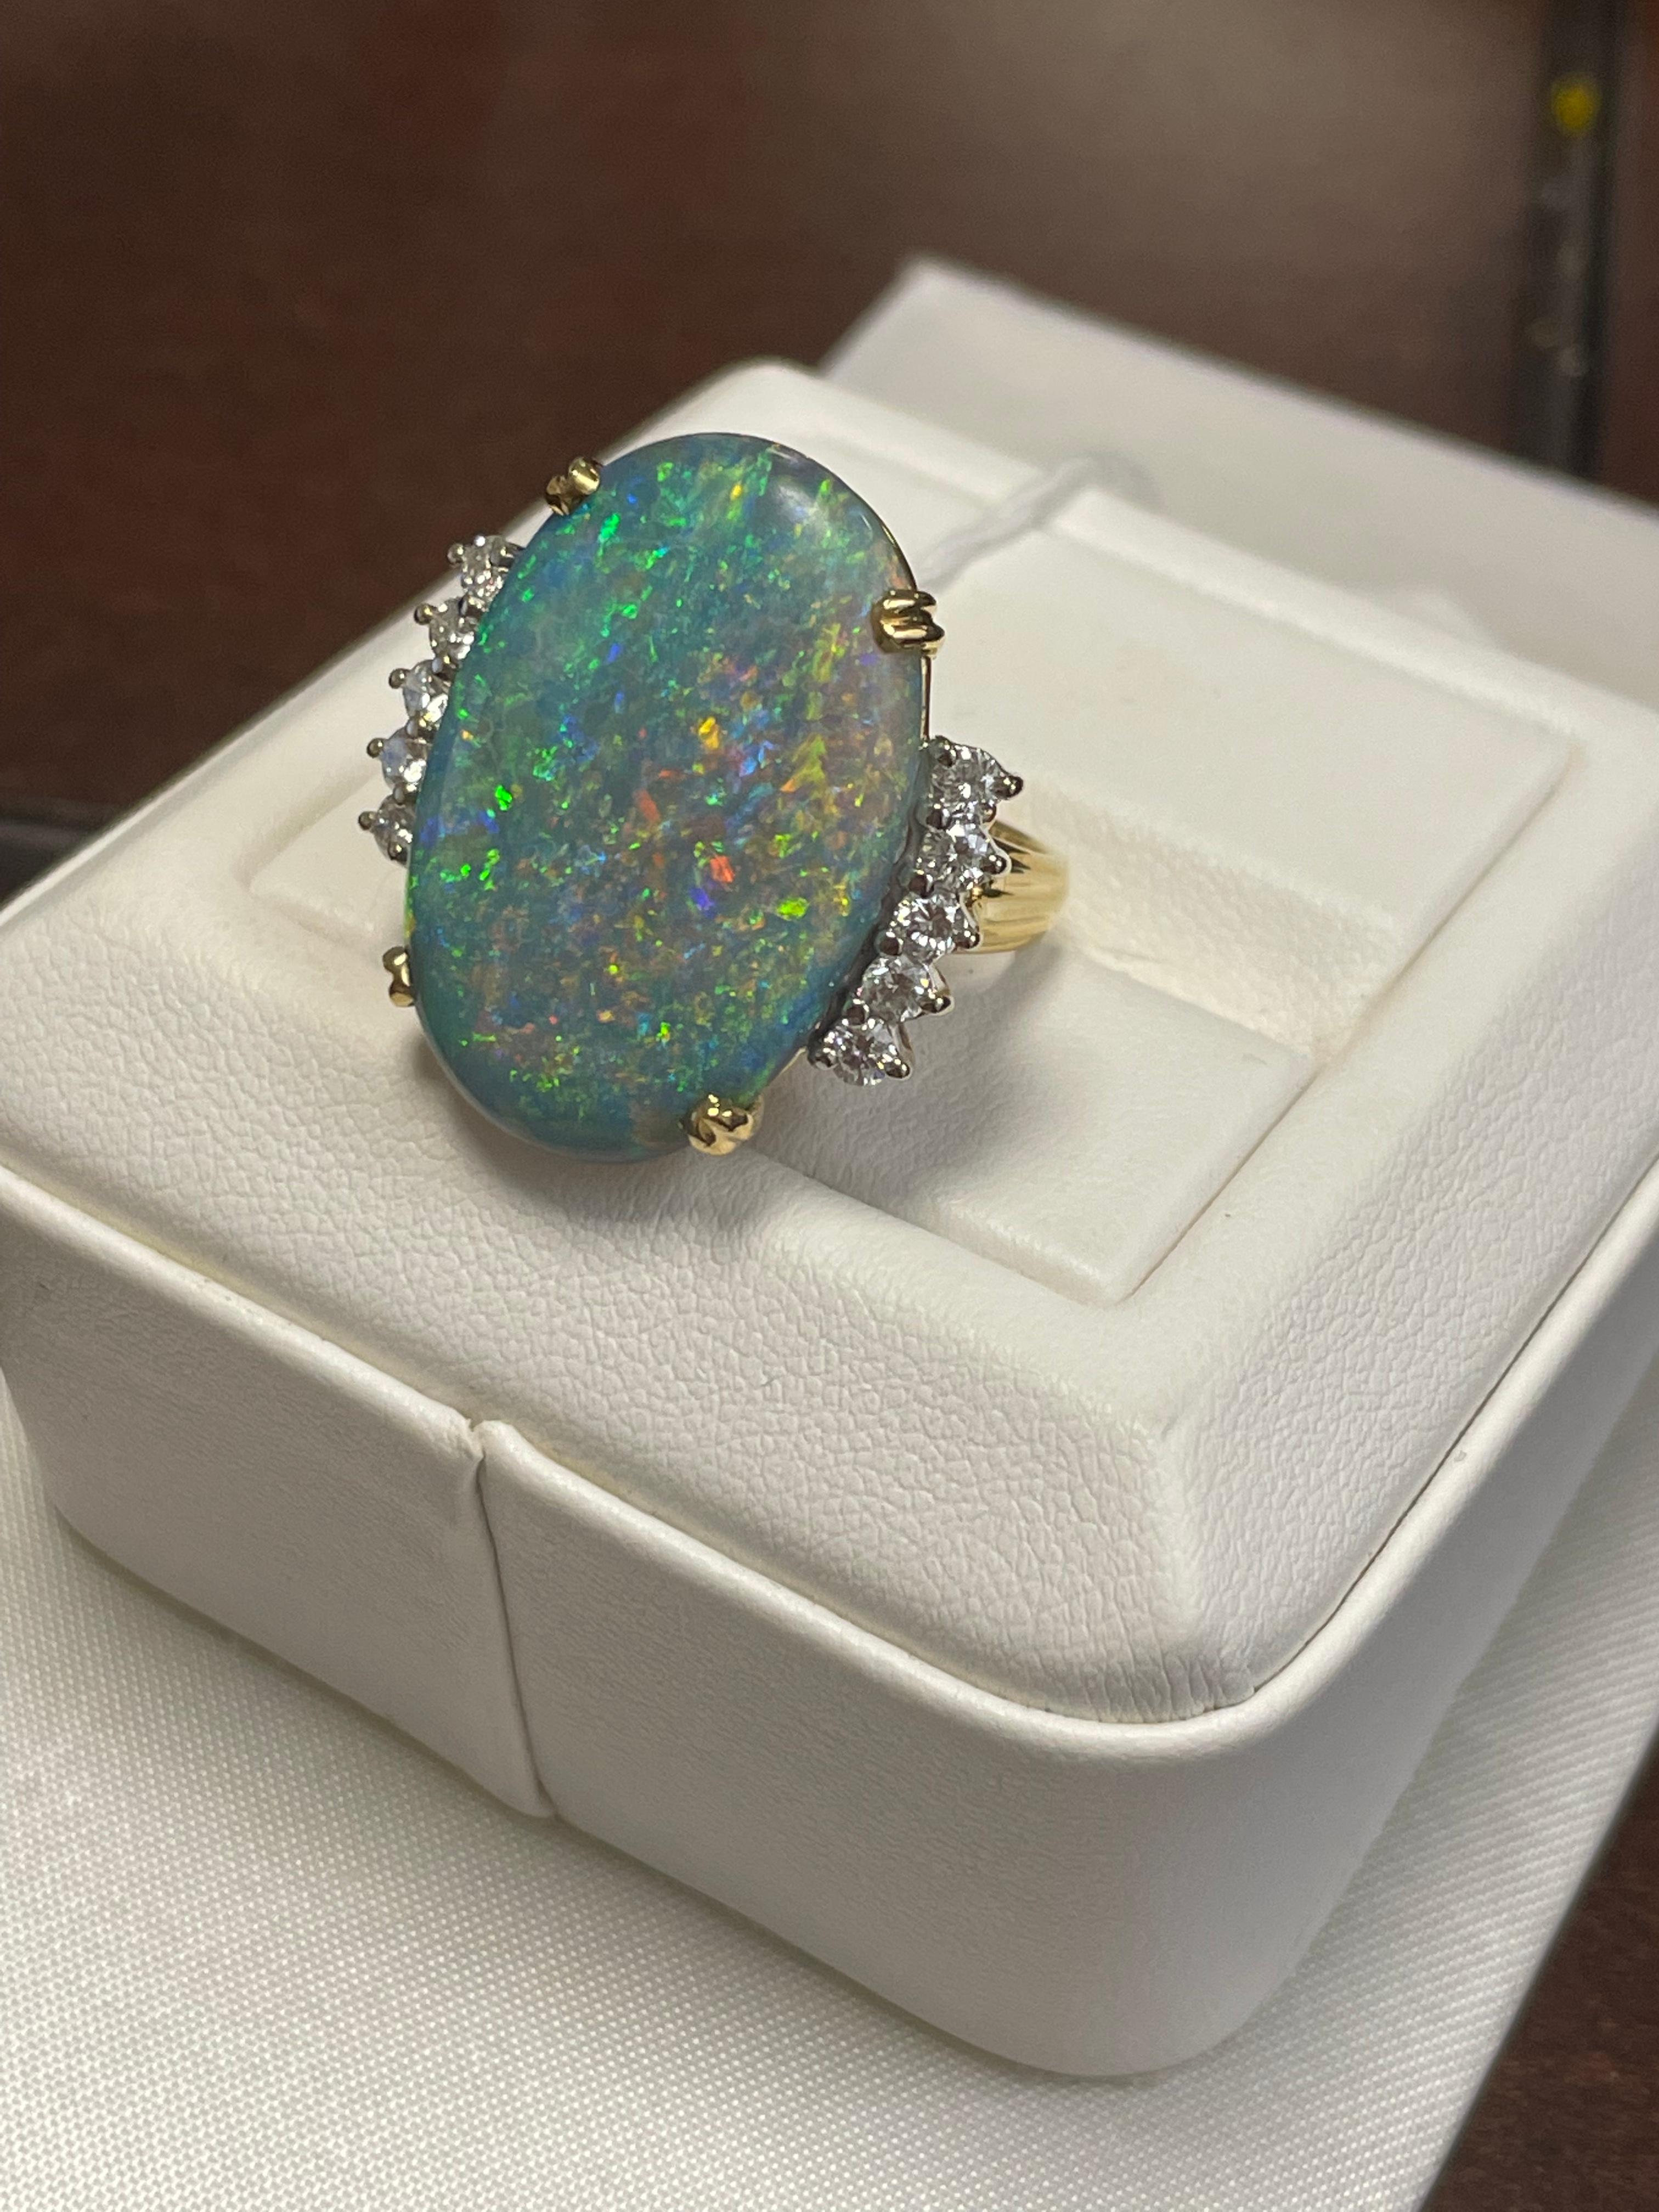 L'opale semi-noire d'une dame avec une couleur de feu bleu-vert, jaune et orange. L'échelle de saturation est moyenne avec un motif de feu d'artifice.  Brillant, en forme de cabochon mesurant 26 x 18,6 mm et pesant 15,0 carats.  10 diamants ronds de